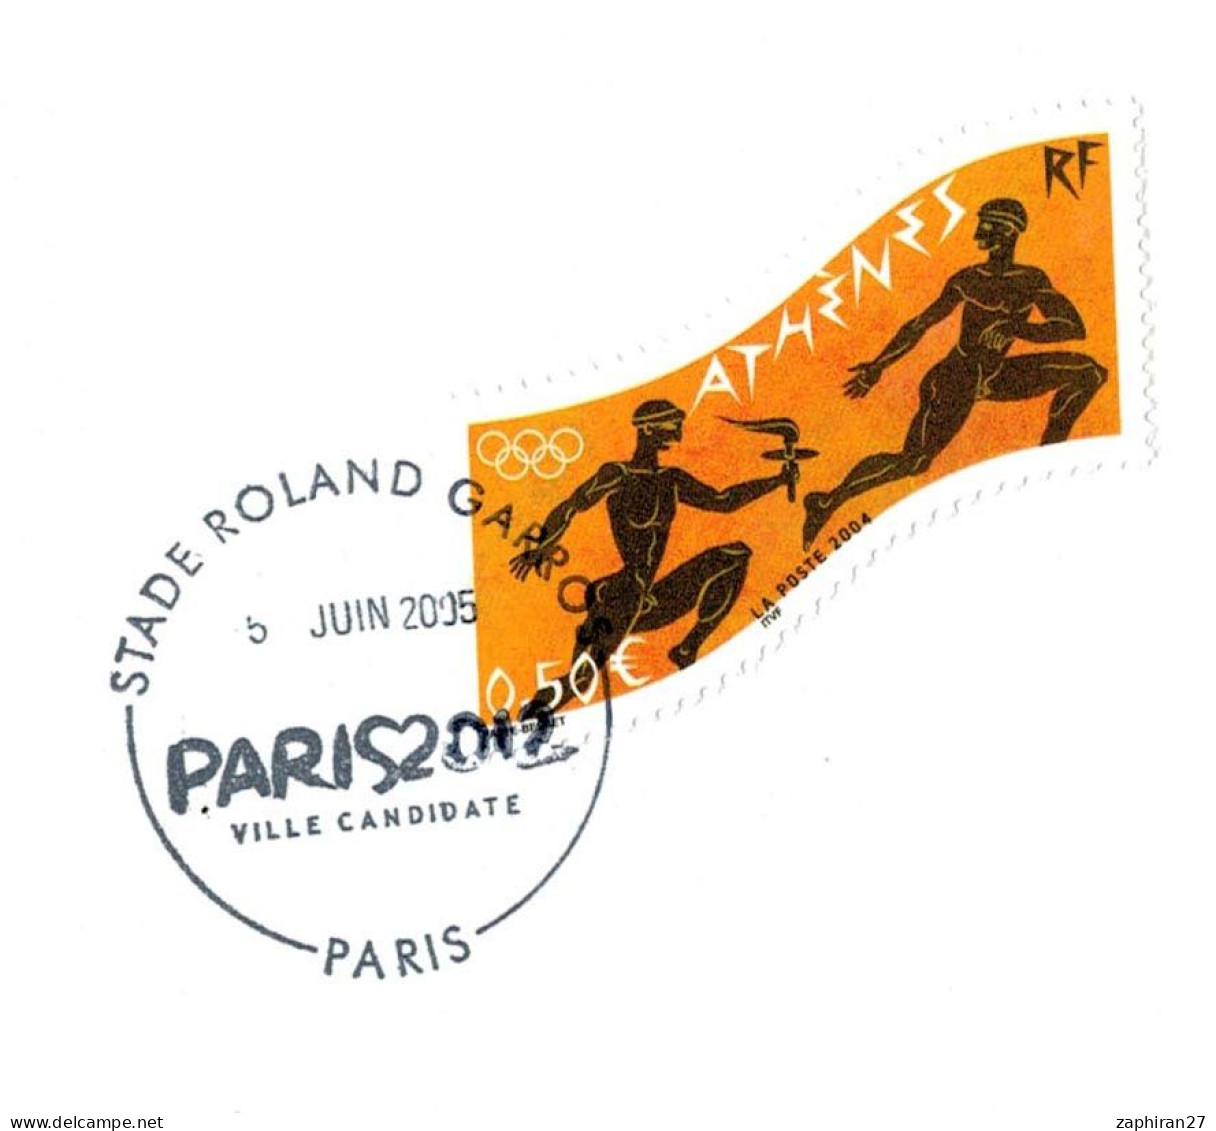 JEUX OLYMPIQUES PARIS 2012 STADE ROLAND GARROS VILLE CANDIDATE (5-6-2005) #462# - Eté 2012: Londres